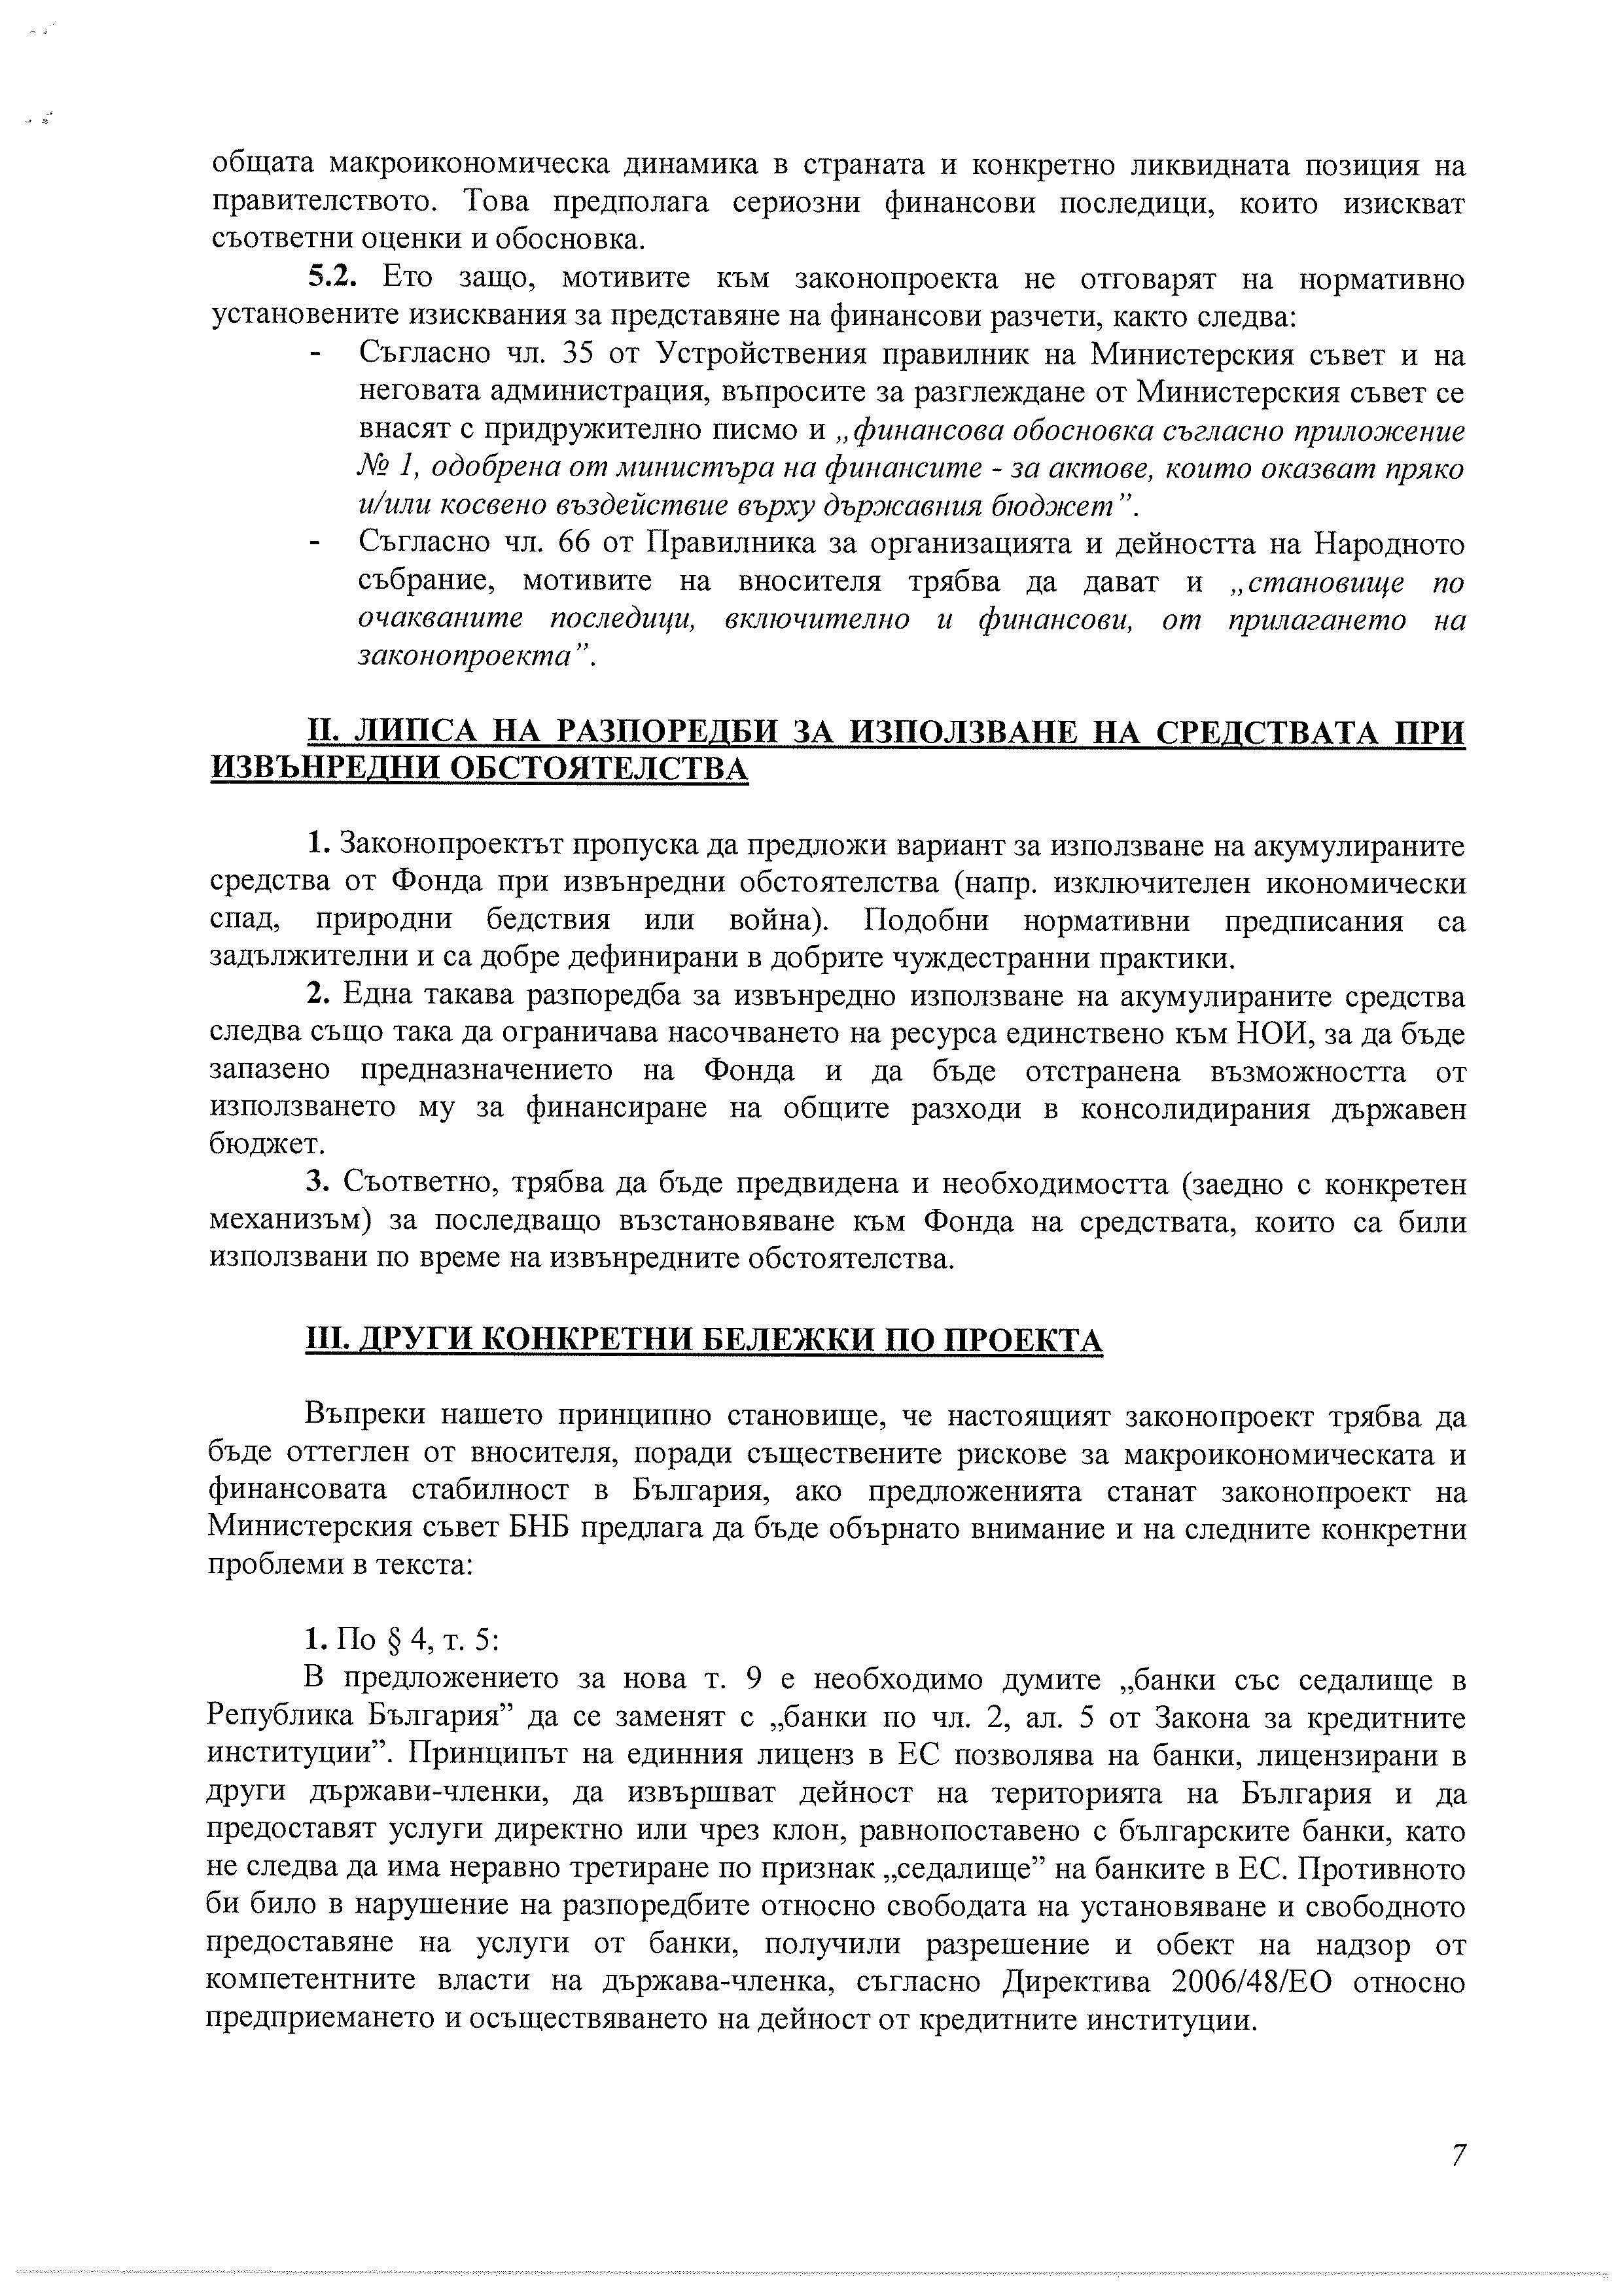 БНБ към Дянков: Оттеглете законопроекта за Сребърния фонд